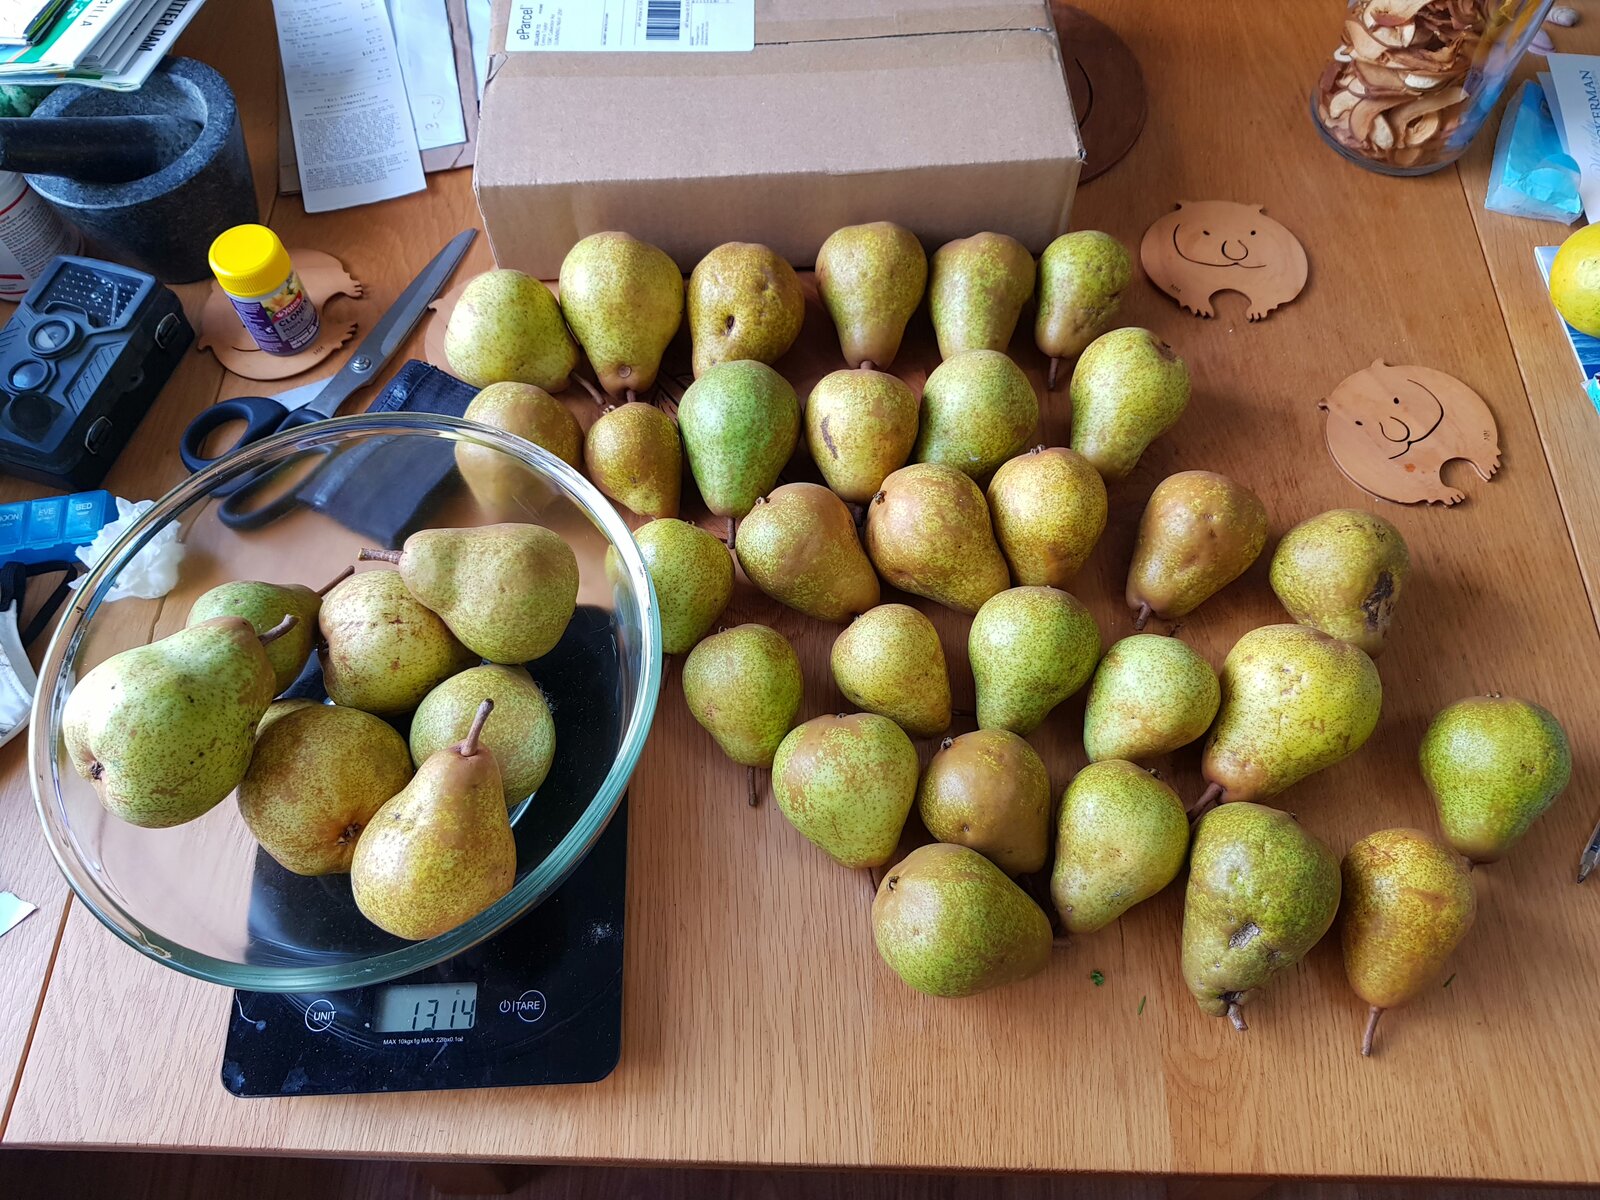 6.5kg of pears